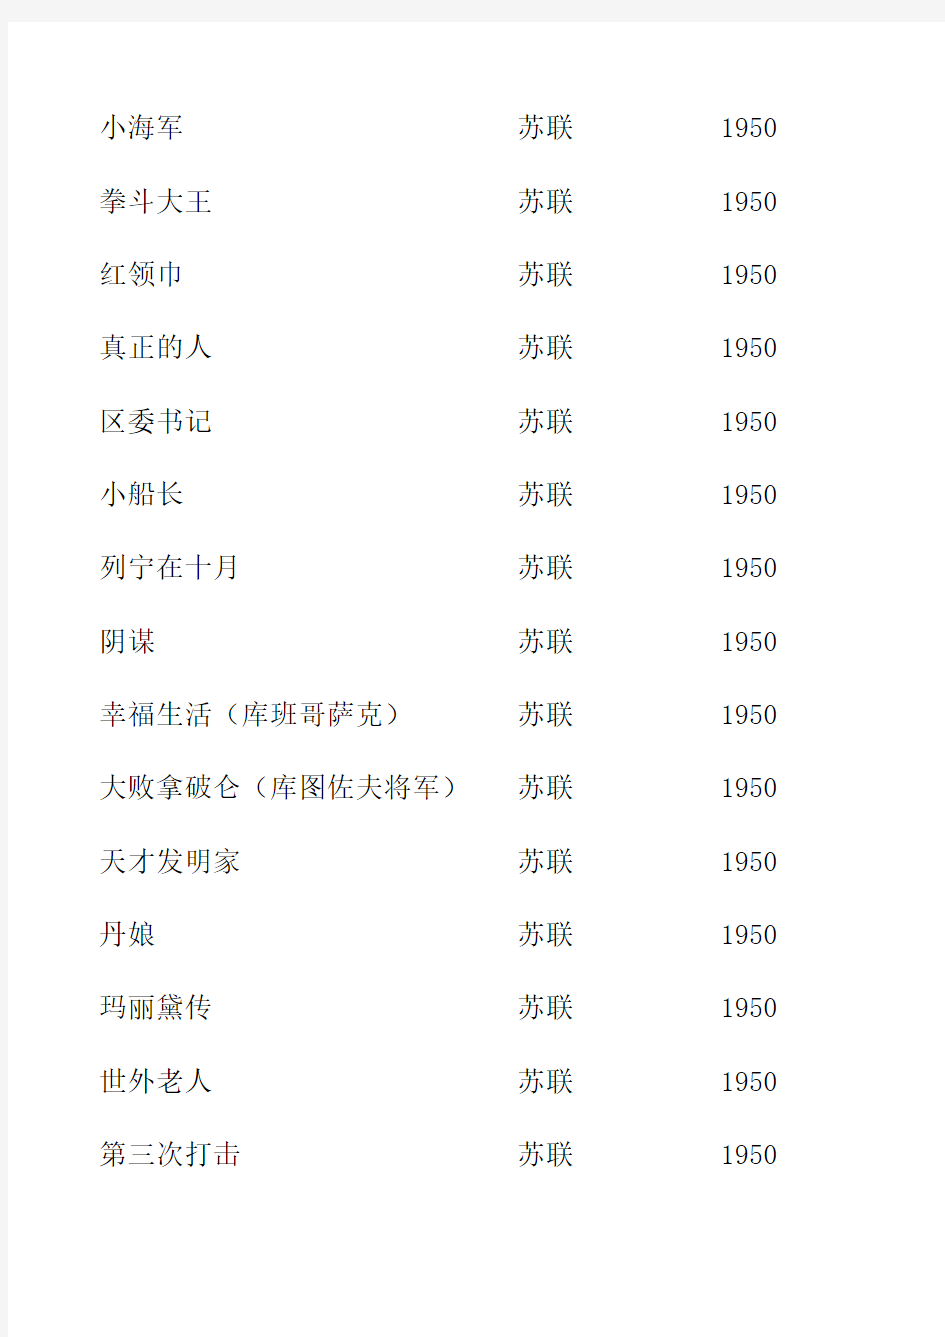 1949-2009年长影上影译制片总目录(共1844部)